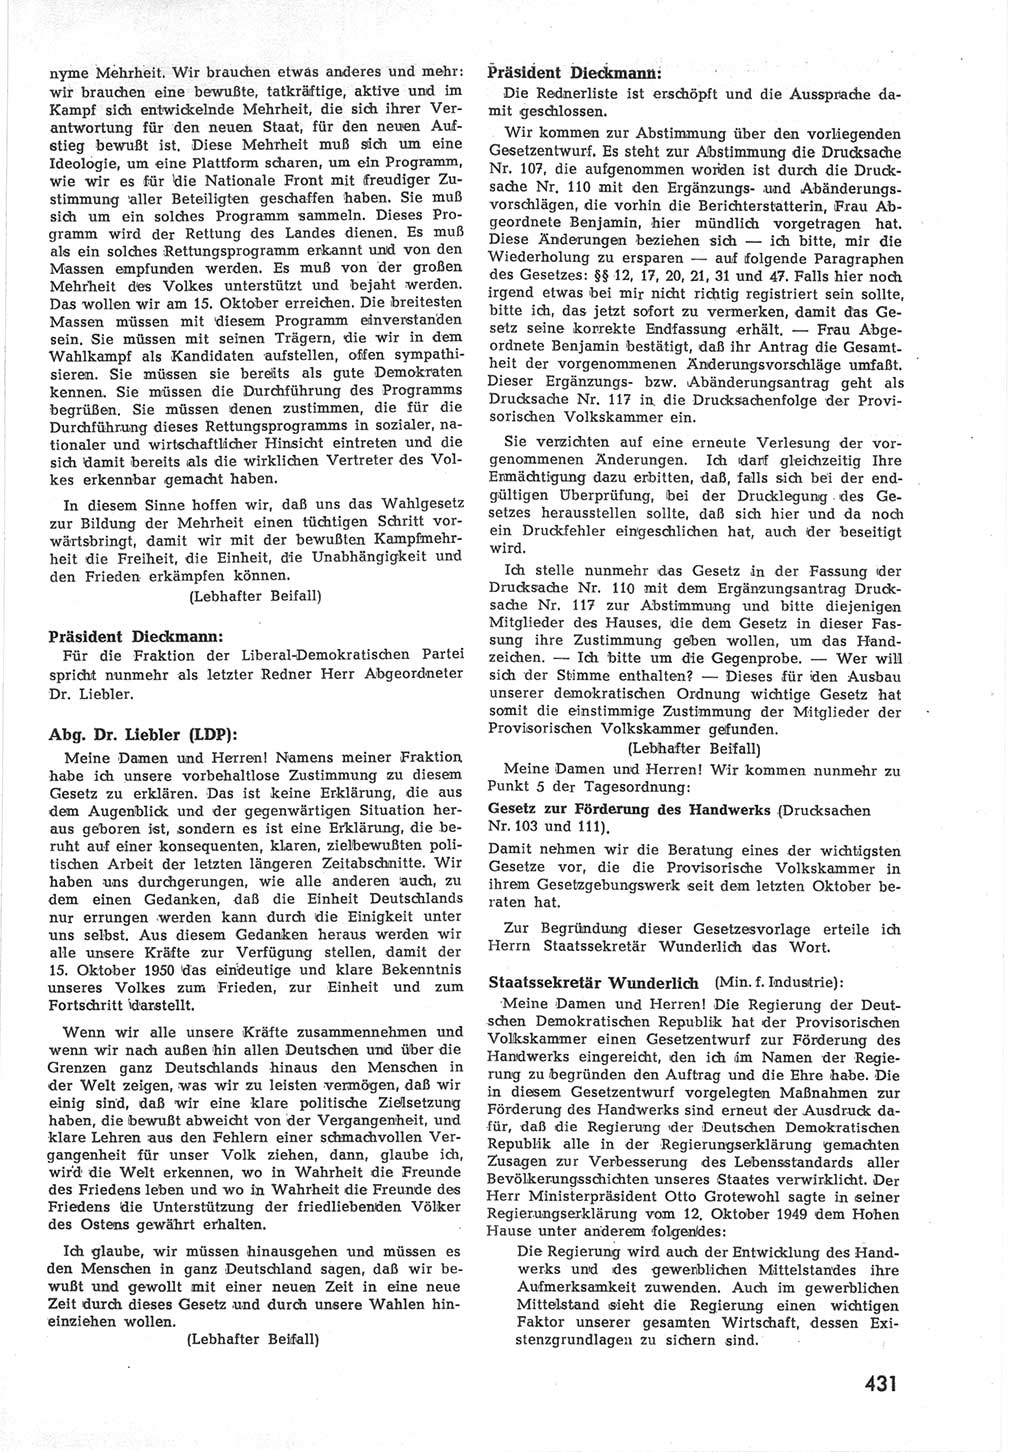 Provisorische Volkskammer (VK) der Deutschen Demokratischen Republik (DDR) 1949-1950, Dokument 449 (Prov. VK DDR 1949-1950, Dok. 449)